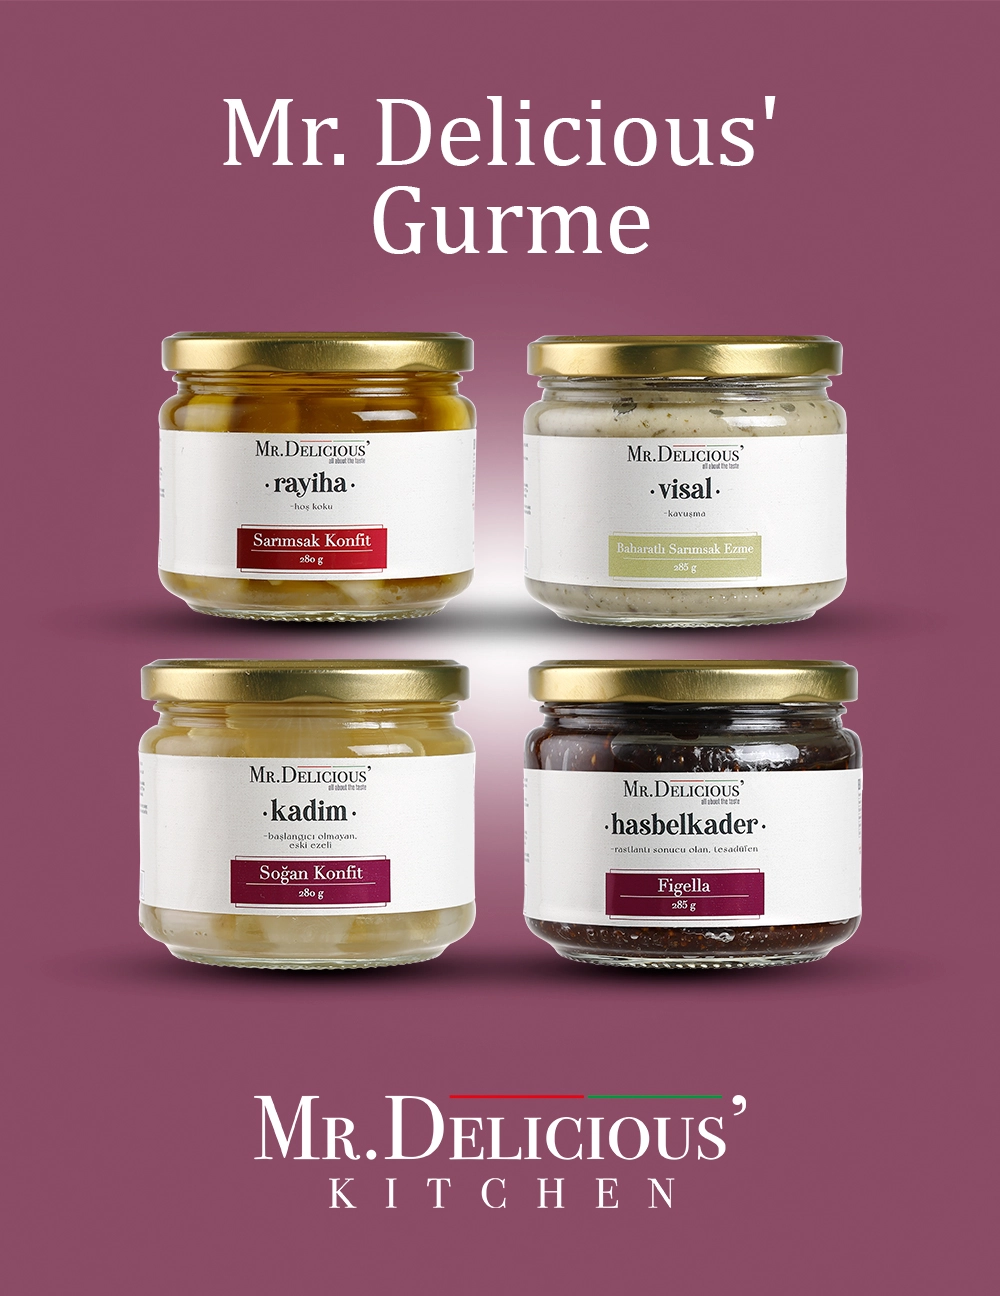 Mr. Delicious' Gurme